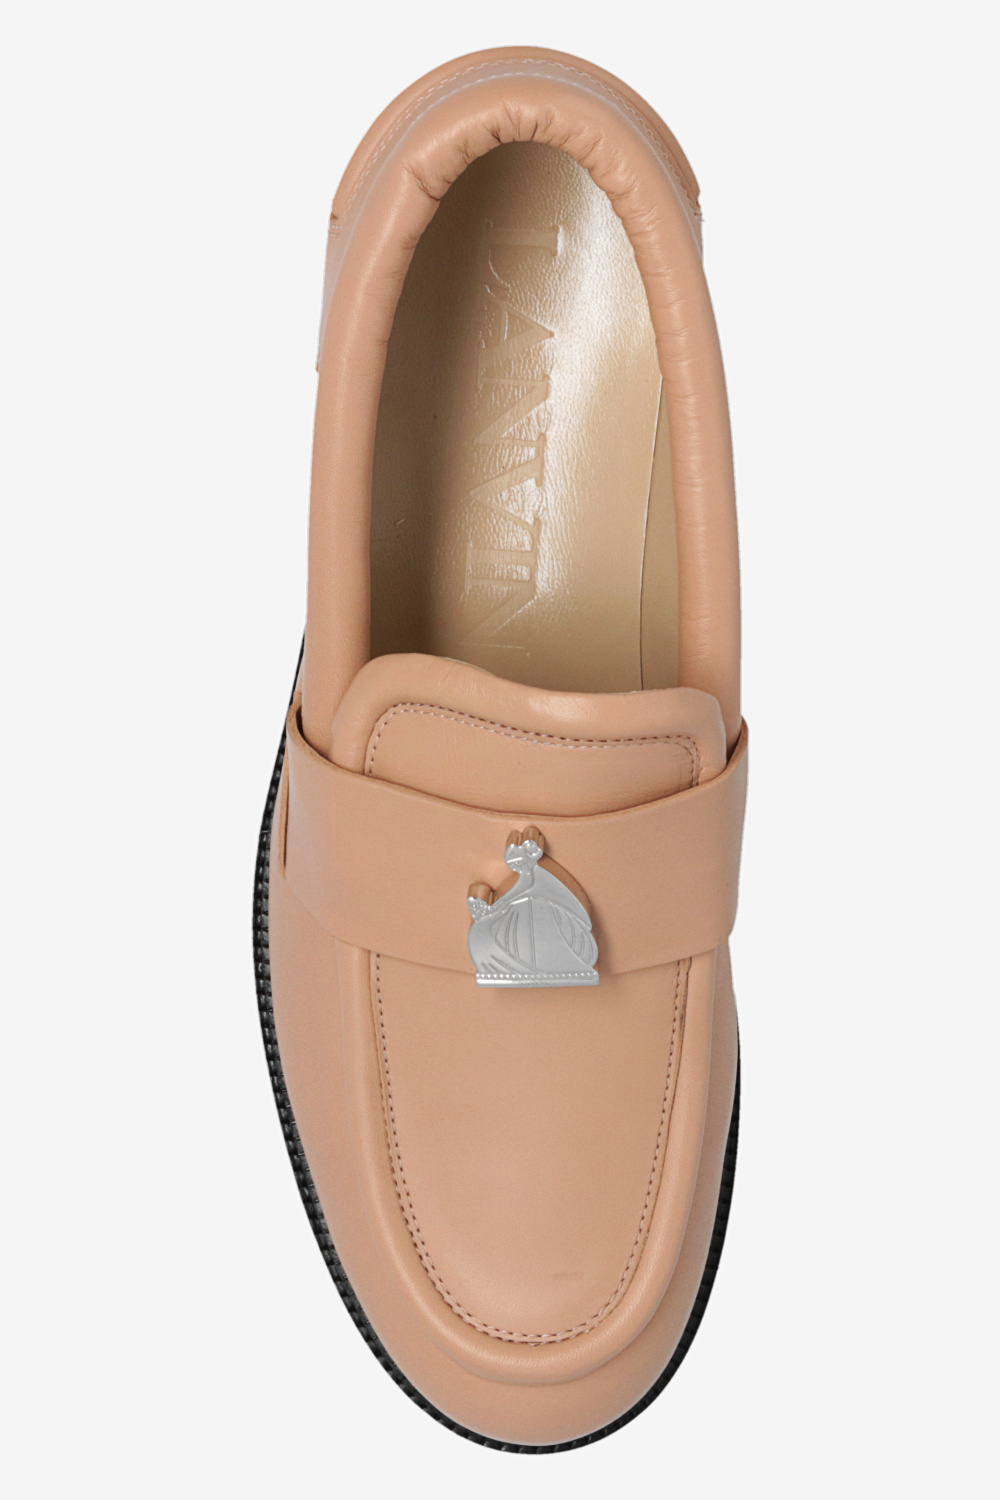 Lanvin Leather shoes